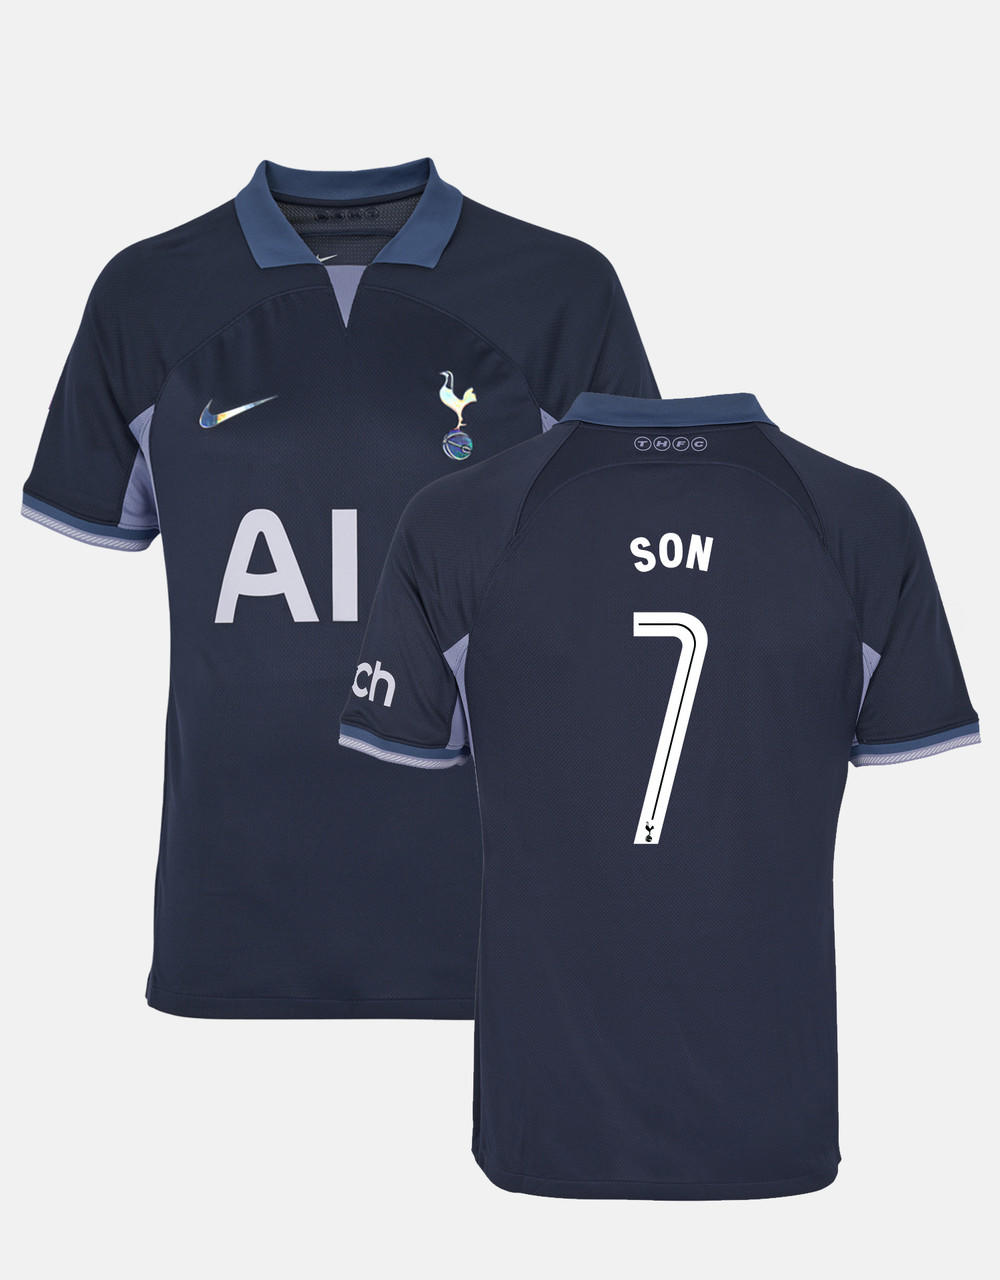 Tottenham Hotspur Heung Min Son 1000 Premier League Goals Shirt - Teeclover